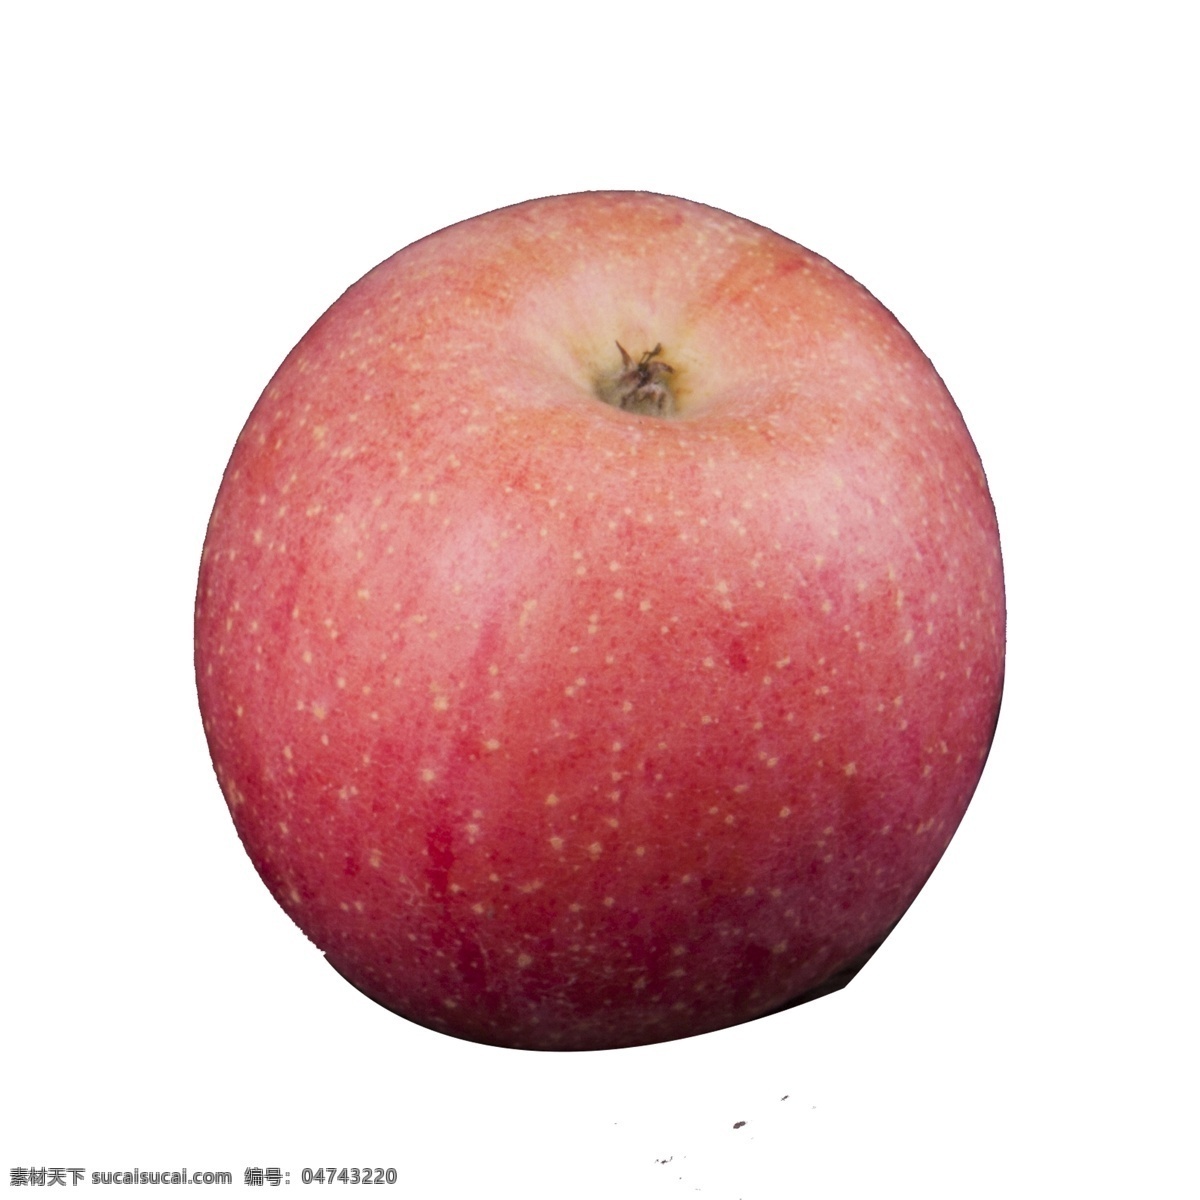 红色 苹果 免 抠 图 苹果果实 红通通 新鲜的苹果 水果 红红 美味的苹果 新鲜水果 红色的苹果 免抠图